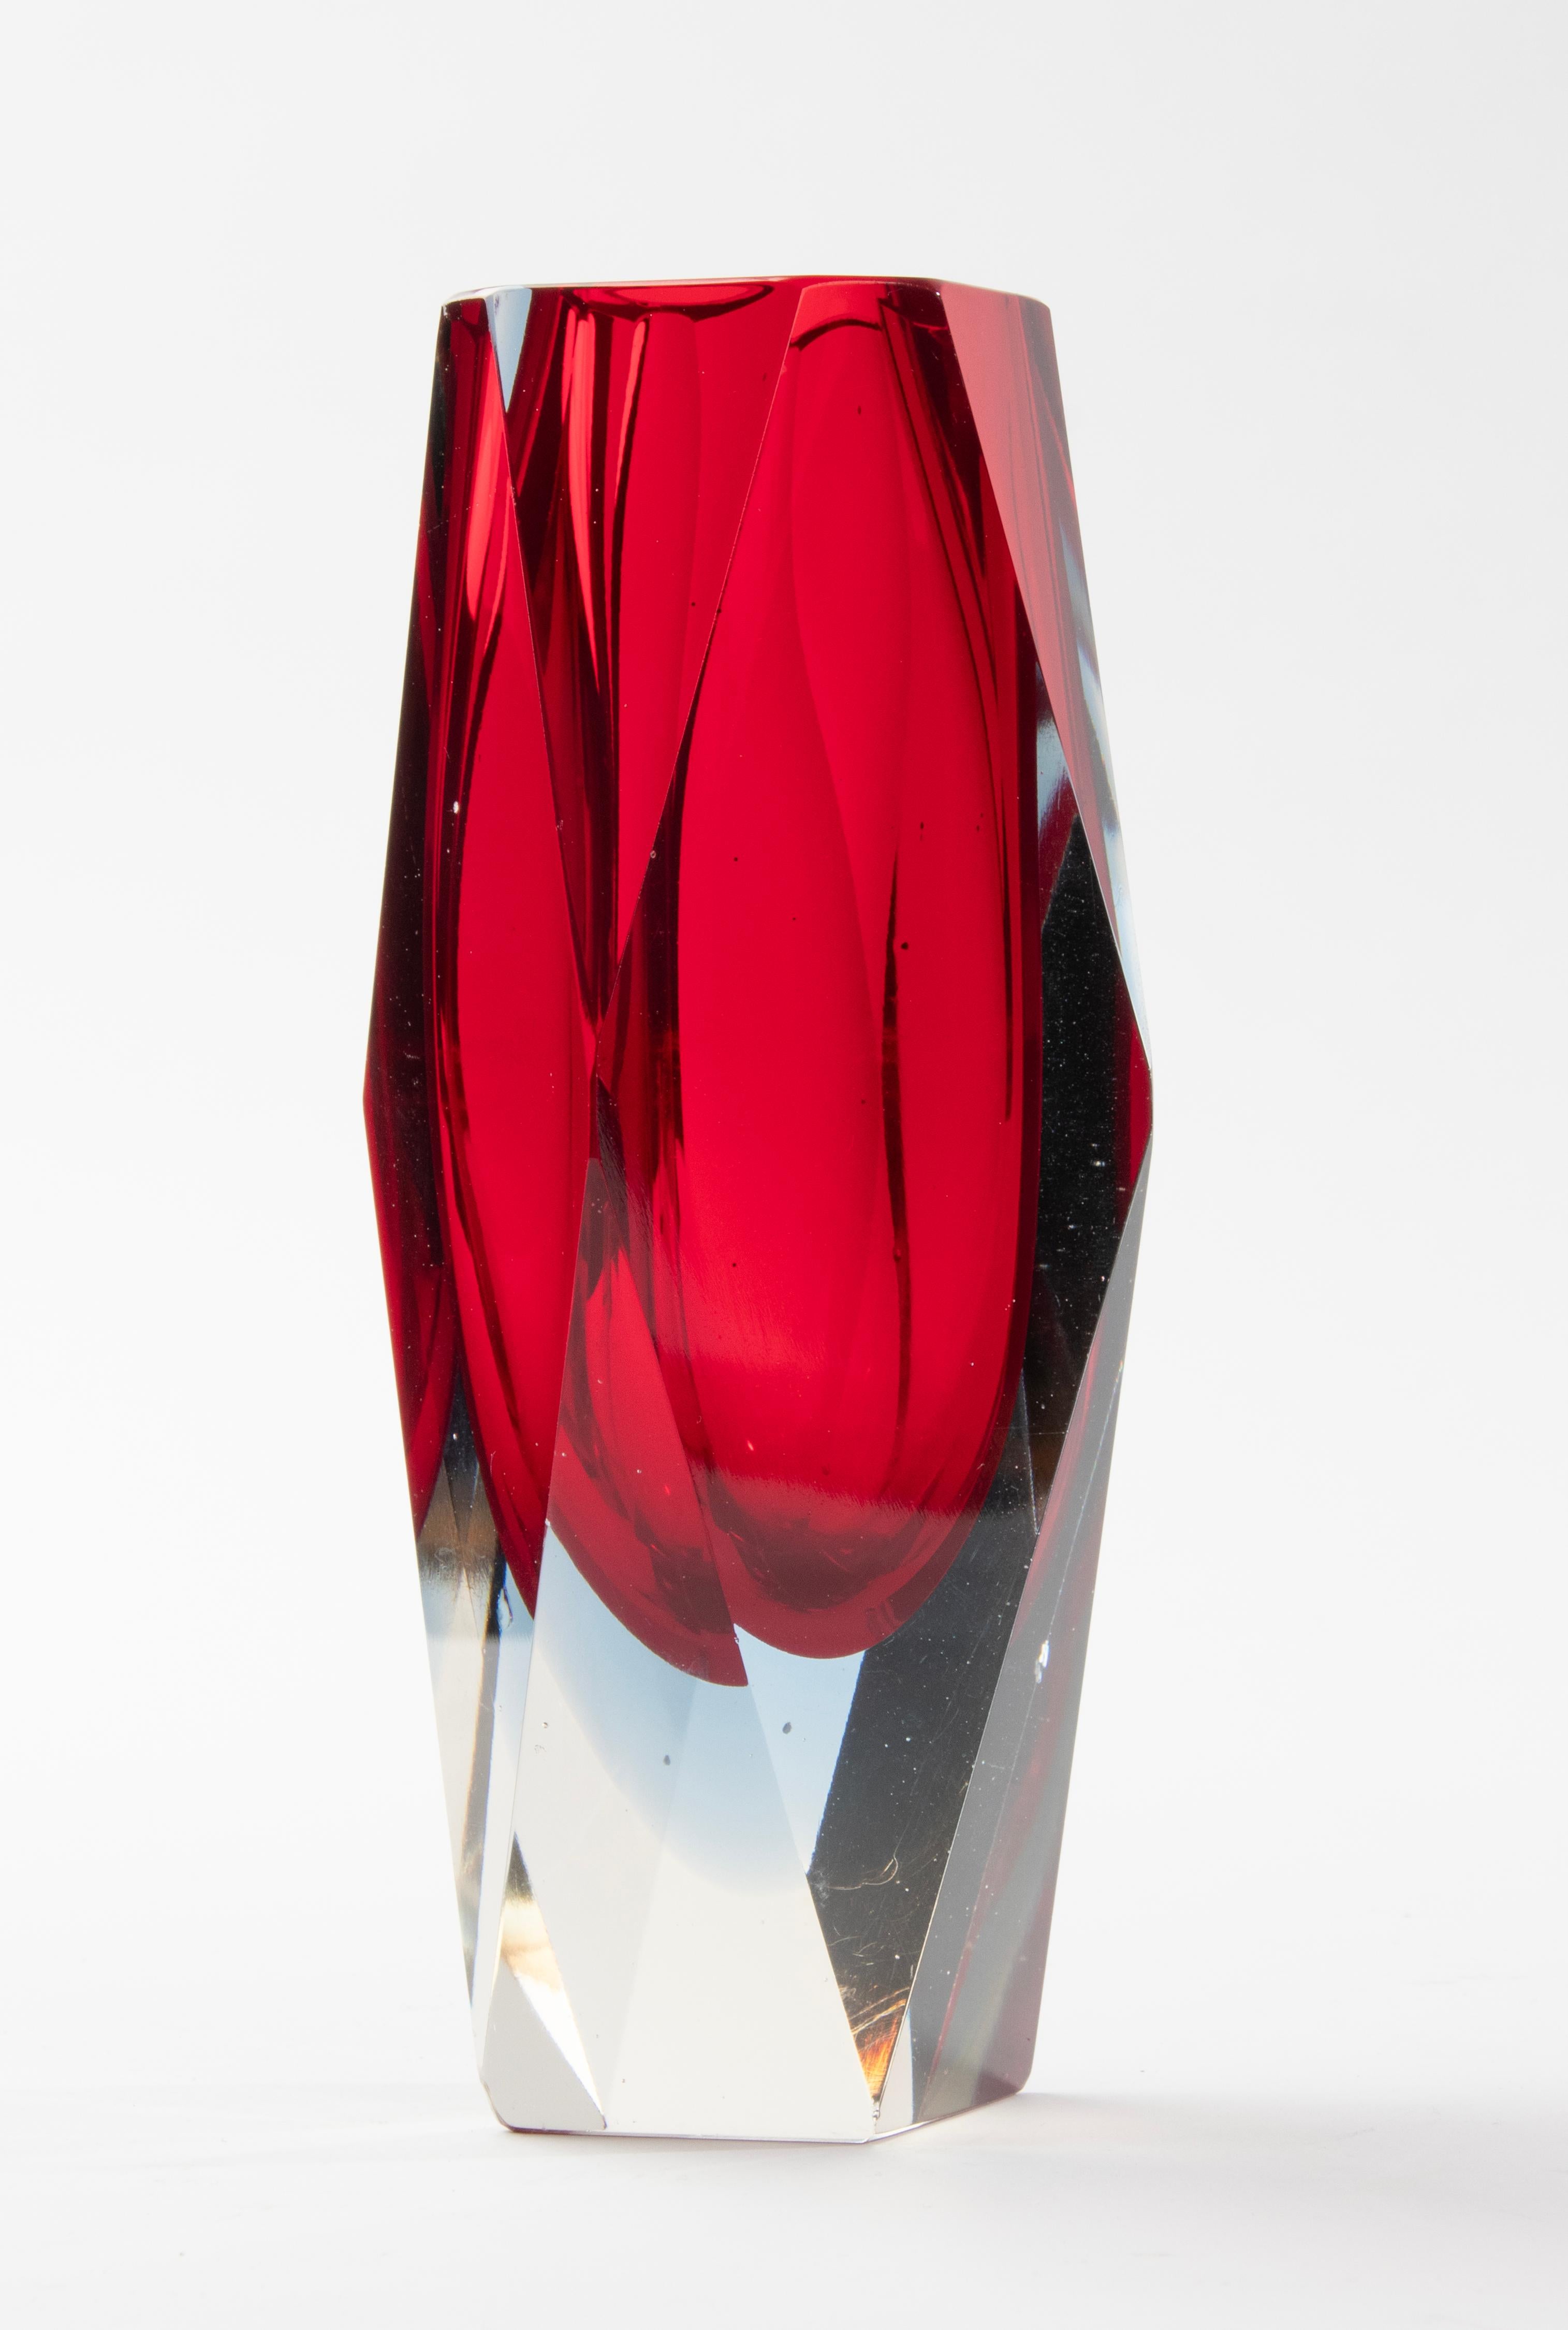 Eine schöne Sommerso-Vase aus Kunstglas, die dem italienischen Designer Flavio Poli zugeschrieben wird. 
Die Vase ist in gutem Zustand. Schöne Farben und Qualität. 

Abmessungen: 8,5 x 8,5 cm und 18 cm hoch. 
Kostenloser Versand weltweit